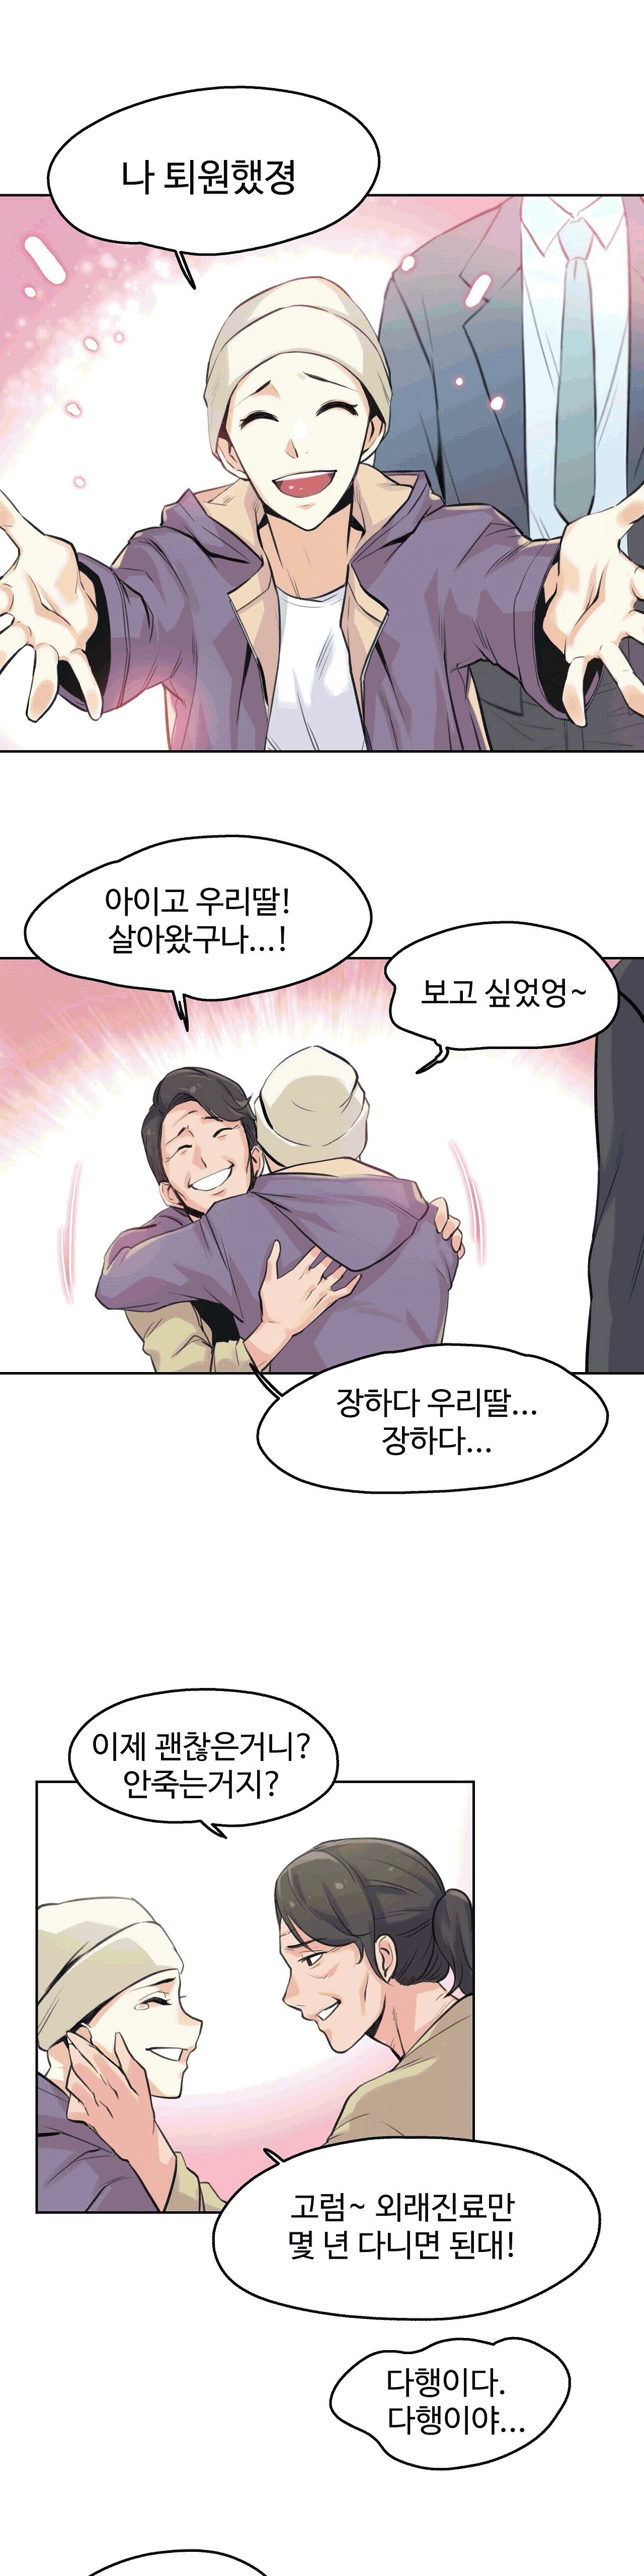 대리 부 | Surrogate Father 6 [Korean] Manhwa 20